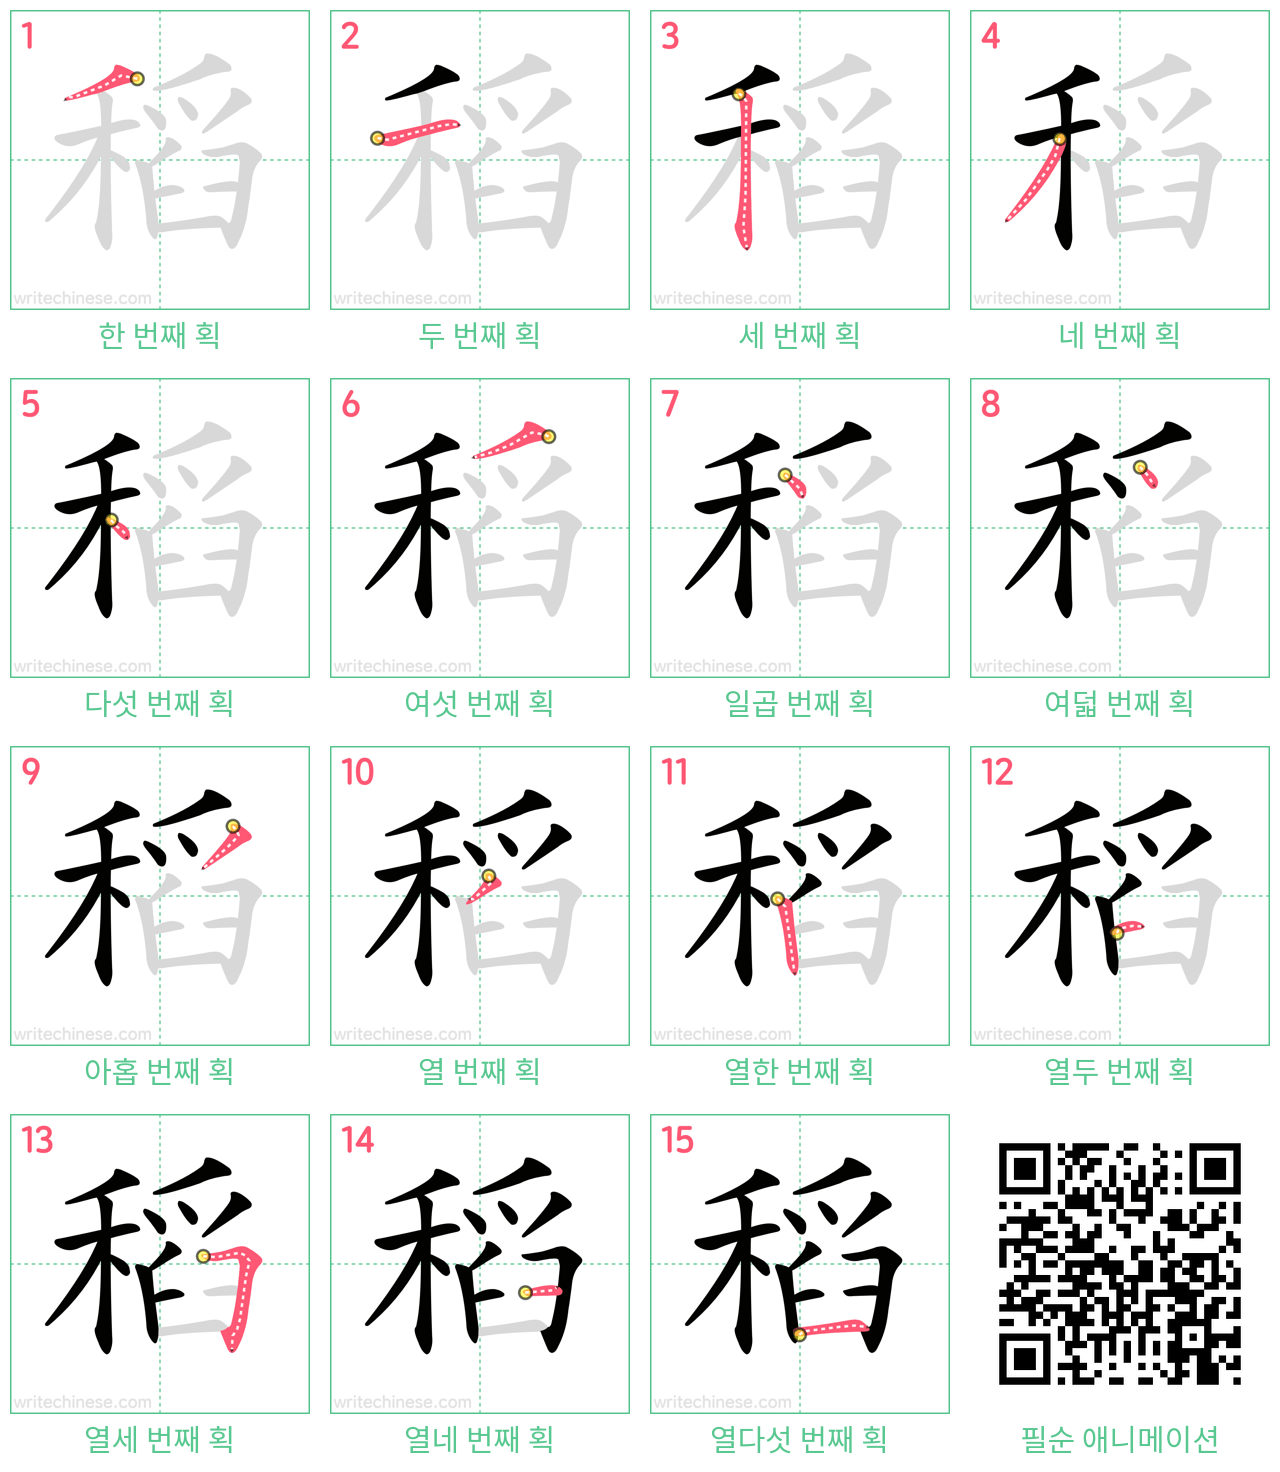 稻 step-by-step stroke order diagrams